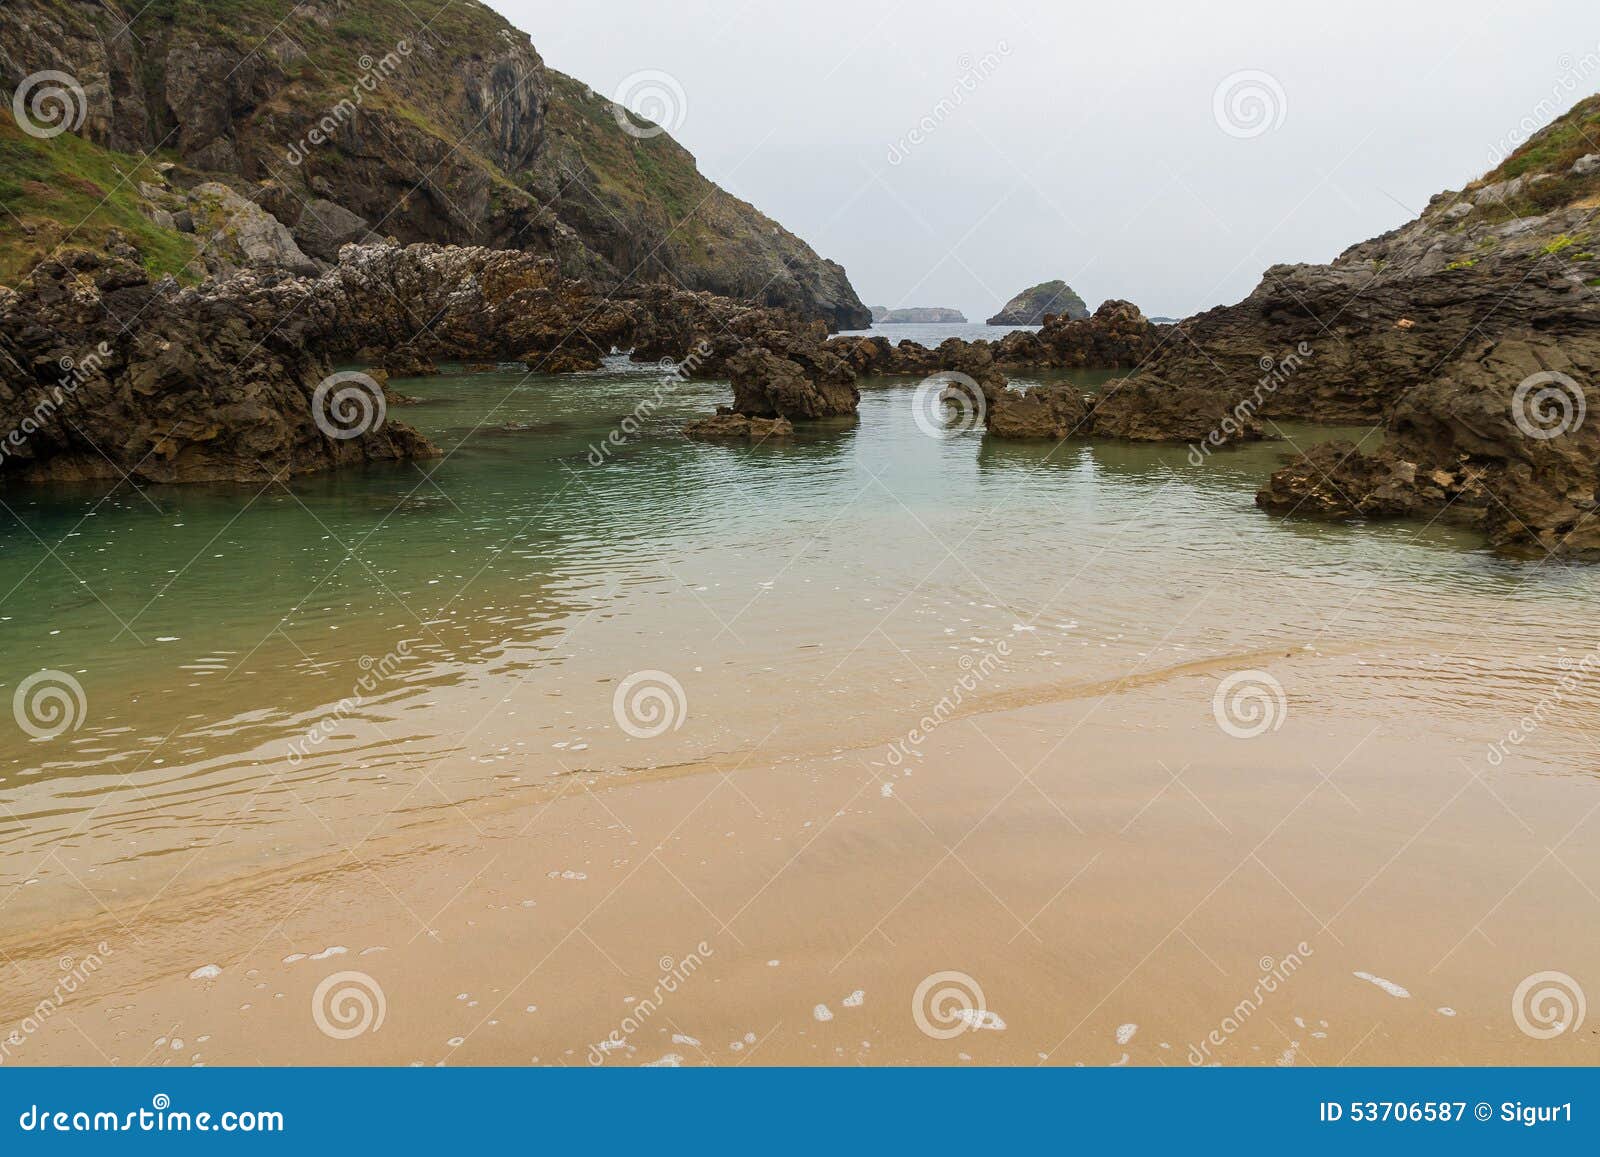 beach barro asturias spain